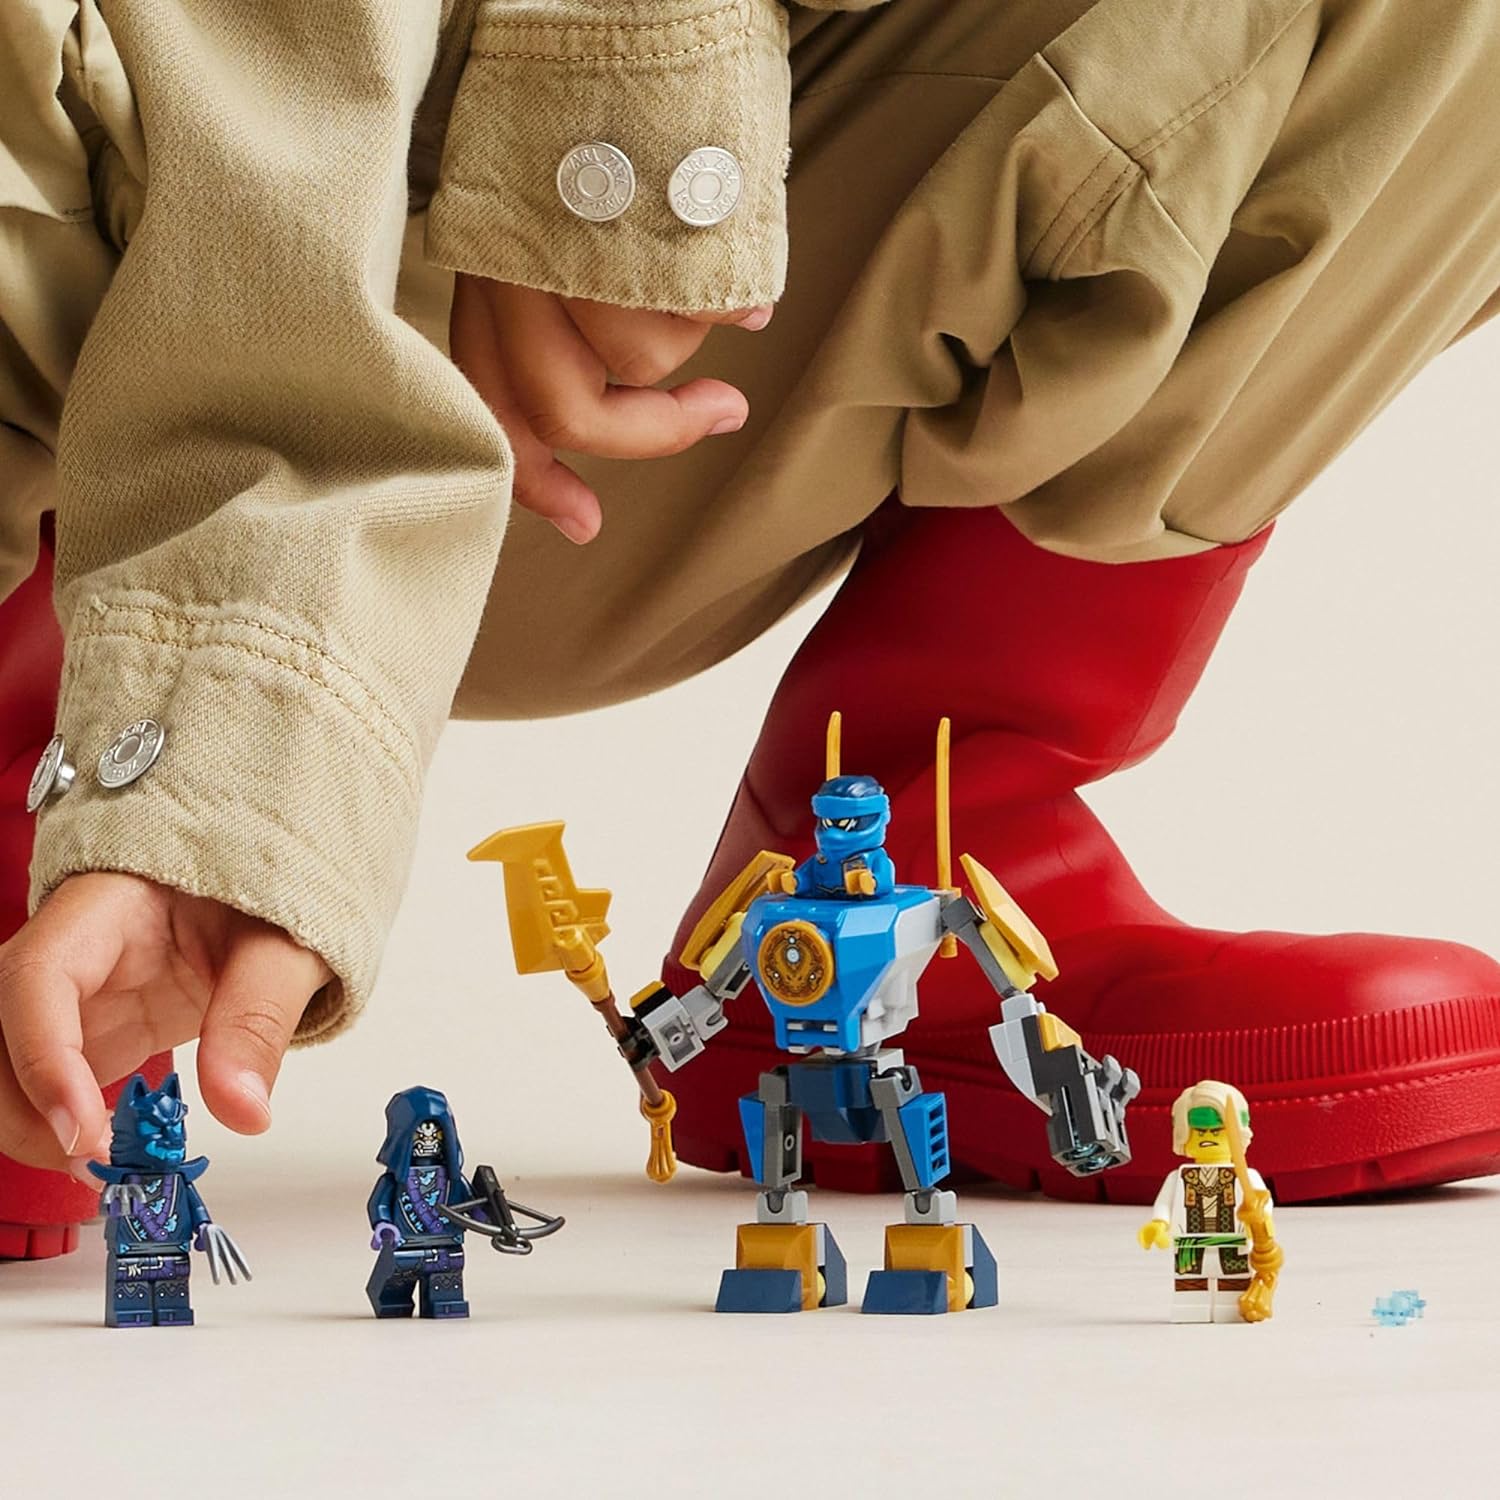 مجموعة ألعاب المغامرة نينجاجو جاي ميك باتل باك من ليجو 71805 للأطفال، مع شخصية جاي المصغرة وشخصية ميكانيكية، هدية نينجا مبتكرة.